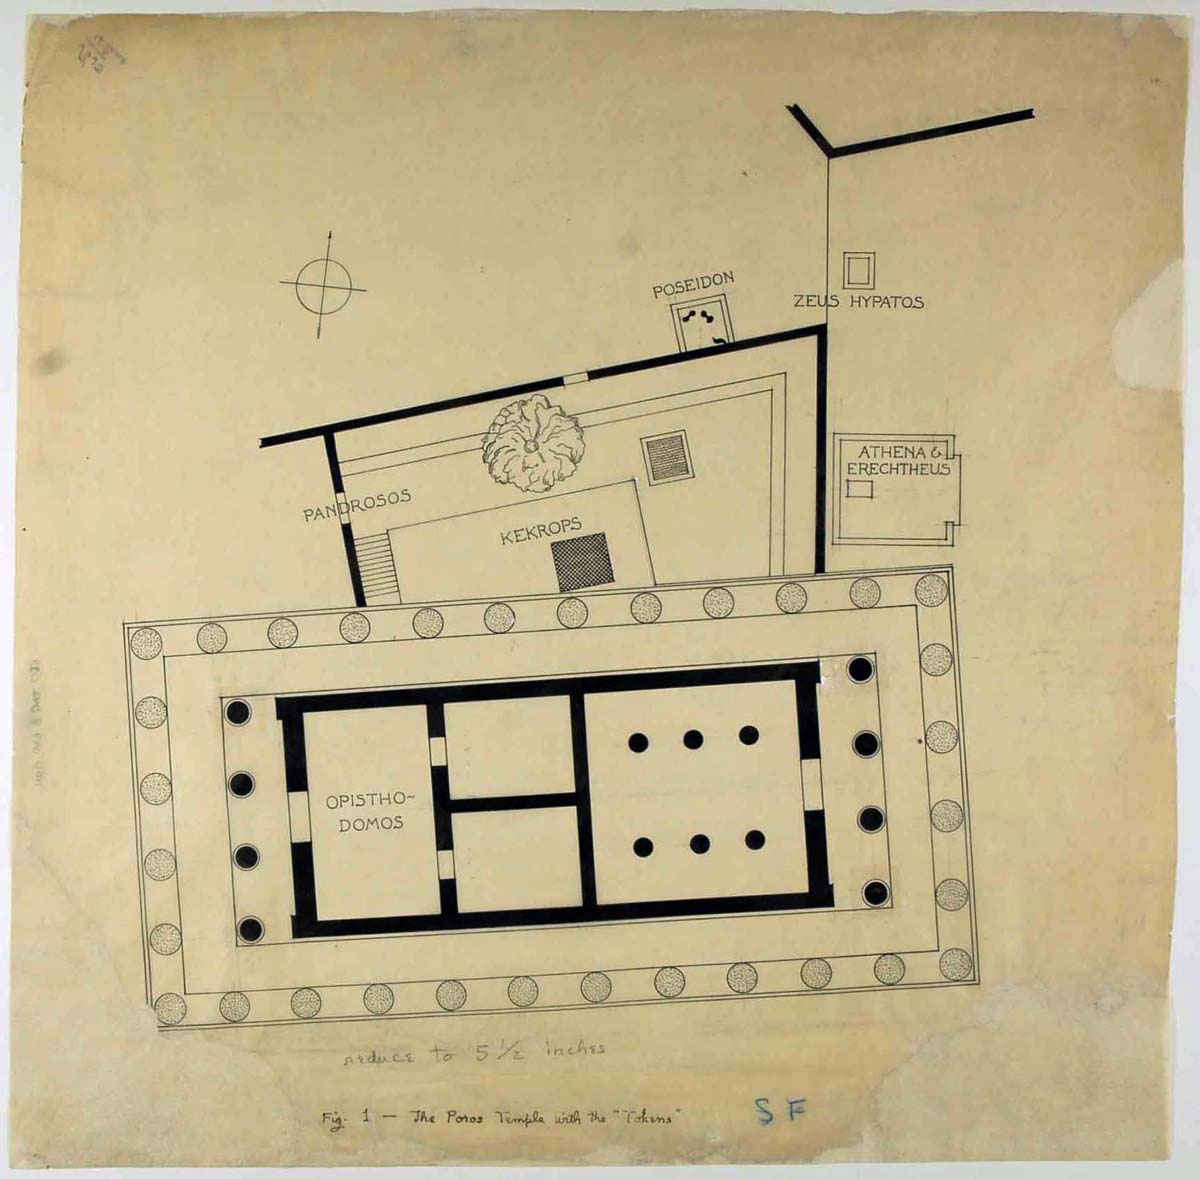 Εικ. 12. Αρχιτεκτονικό σχέδιο (1930-1940) του William Bell Dinsmoor, το οποίο ανήκει στην Αμερικανική Σχολή Κλασικών Σπουδών. Μετά την ολοκλήρωση των εργασιών συντήρησης (φωτ. Μουσείο Μπενάκη).